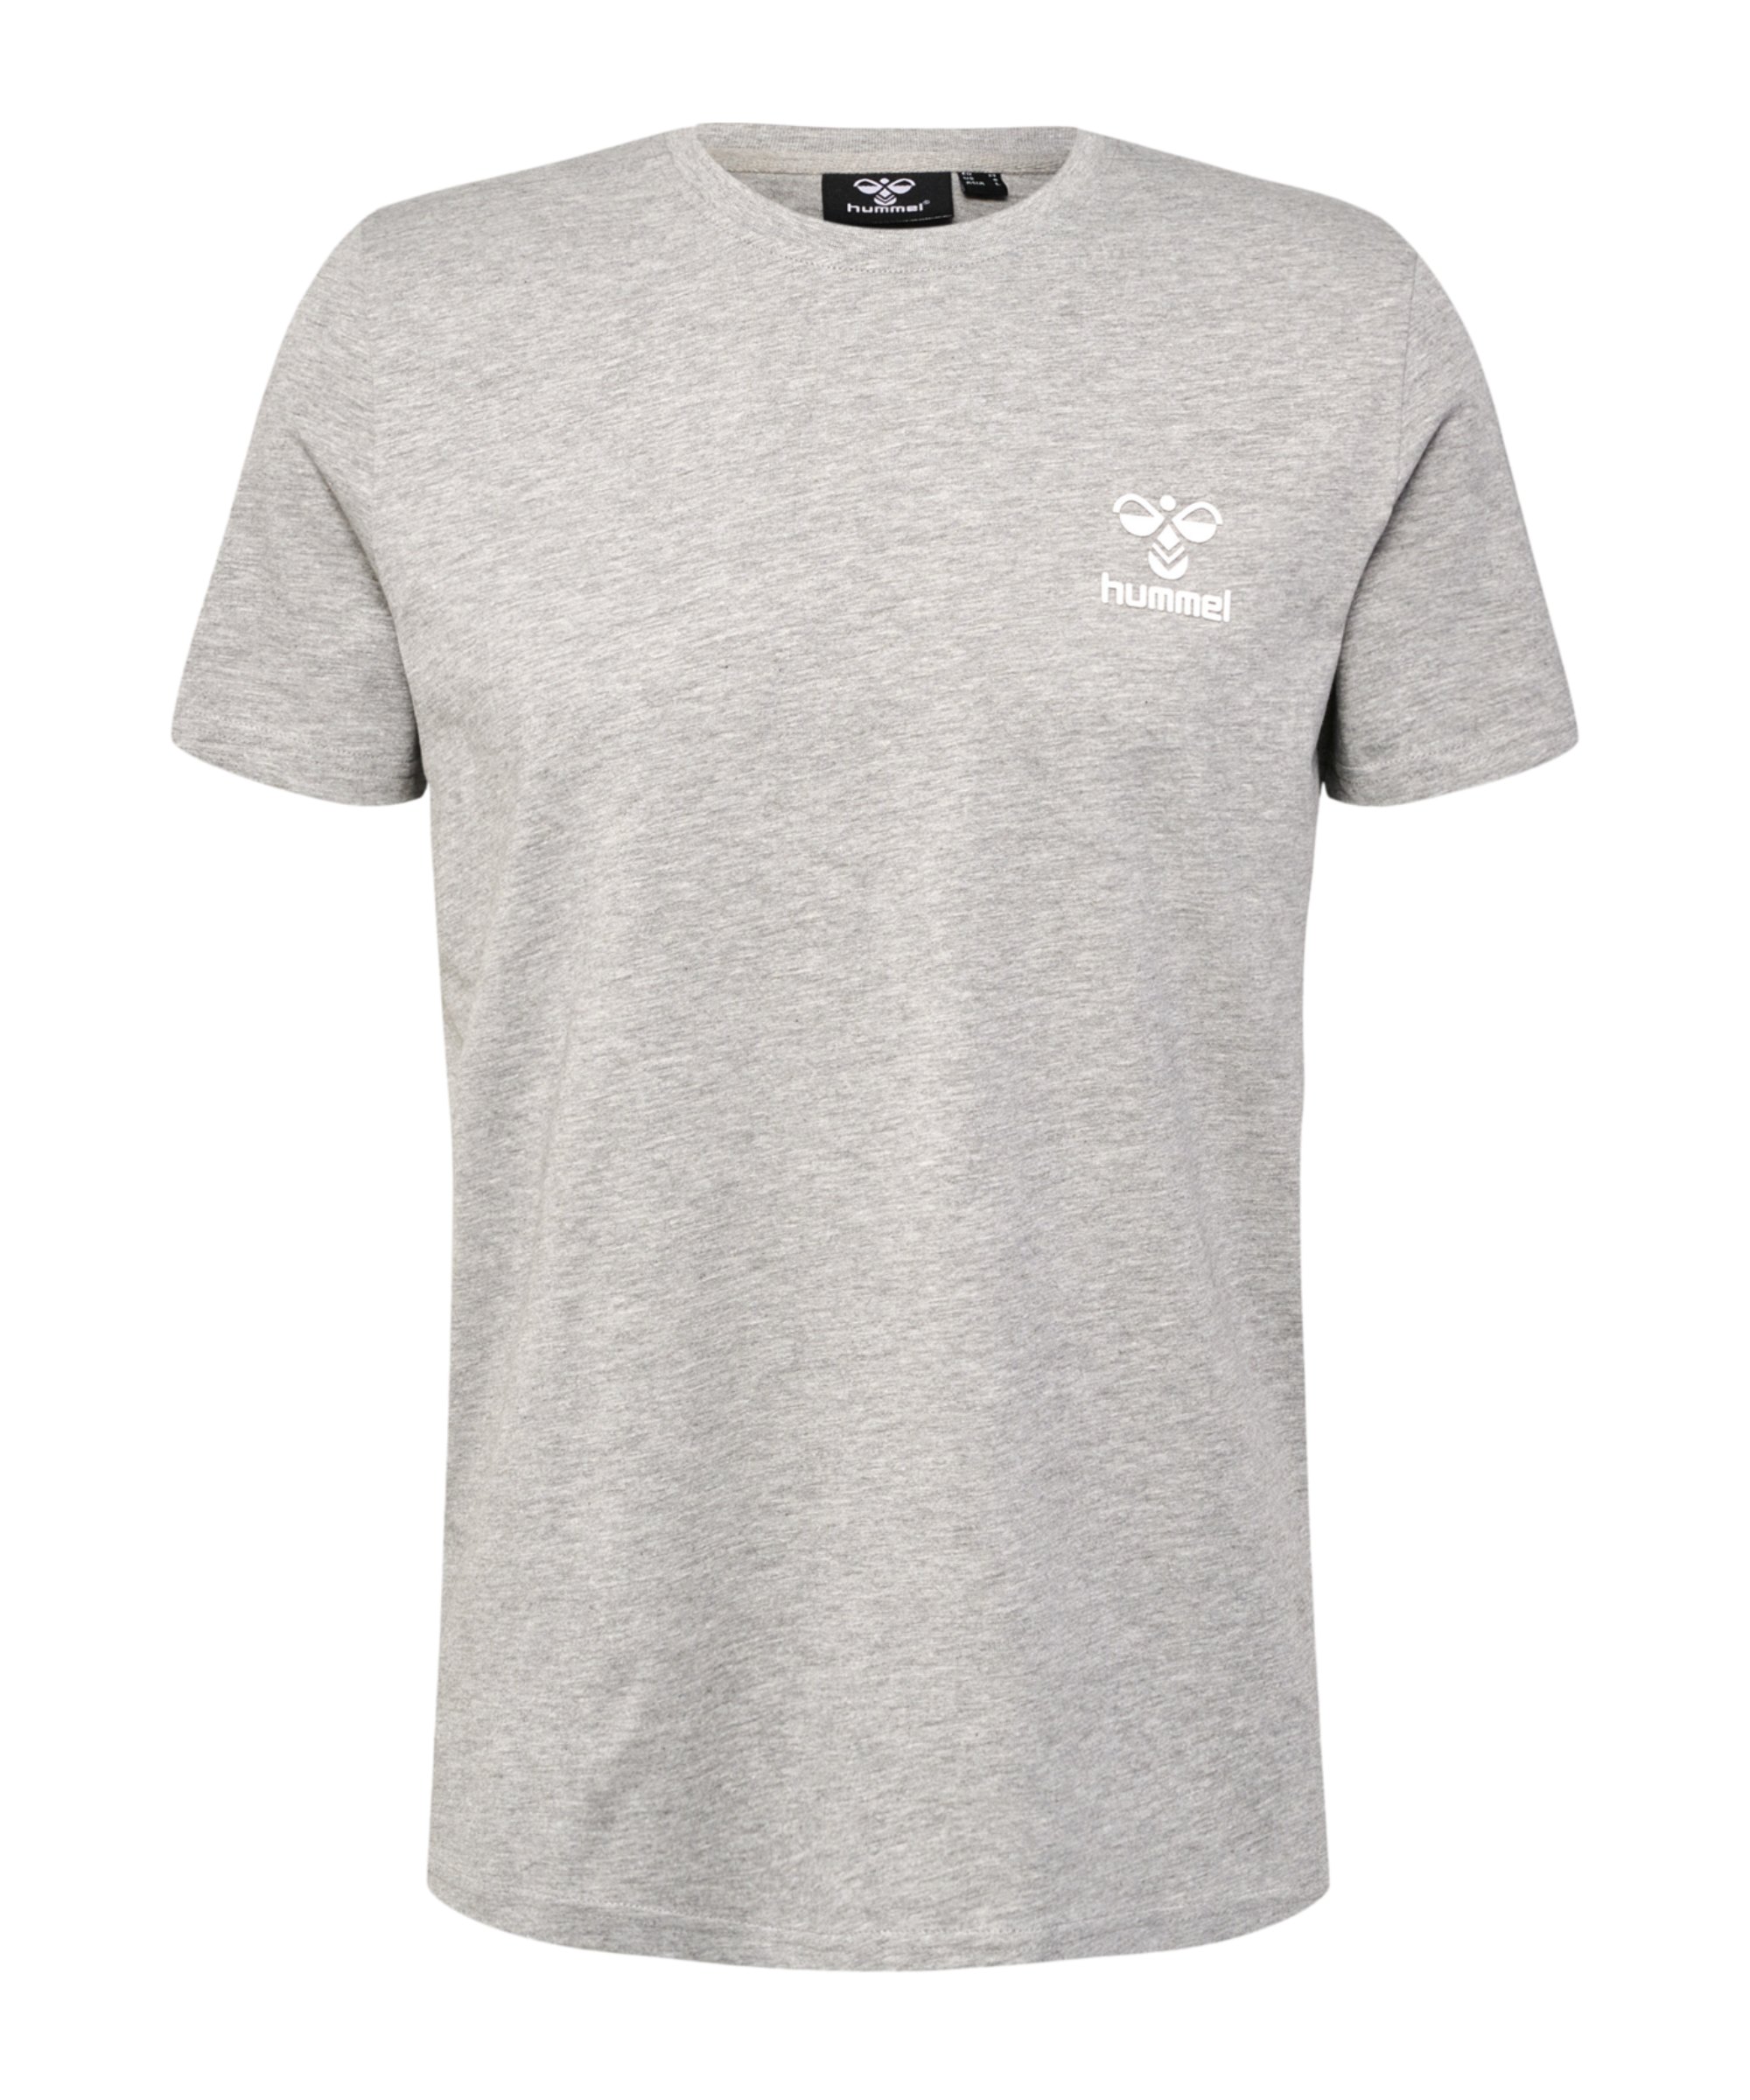 Hummel T-Shirt grau Grau hmllCONS